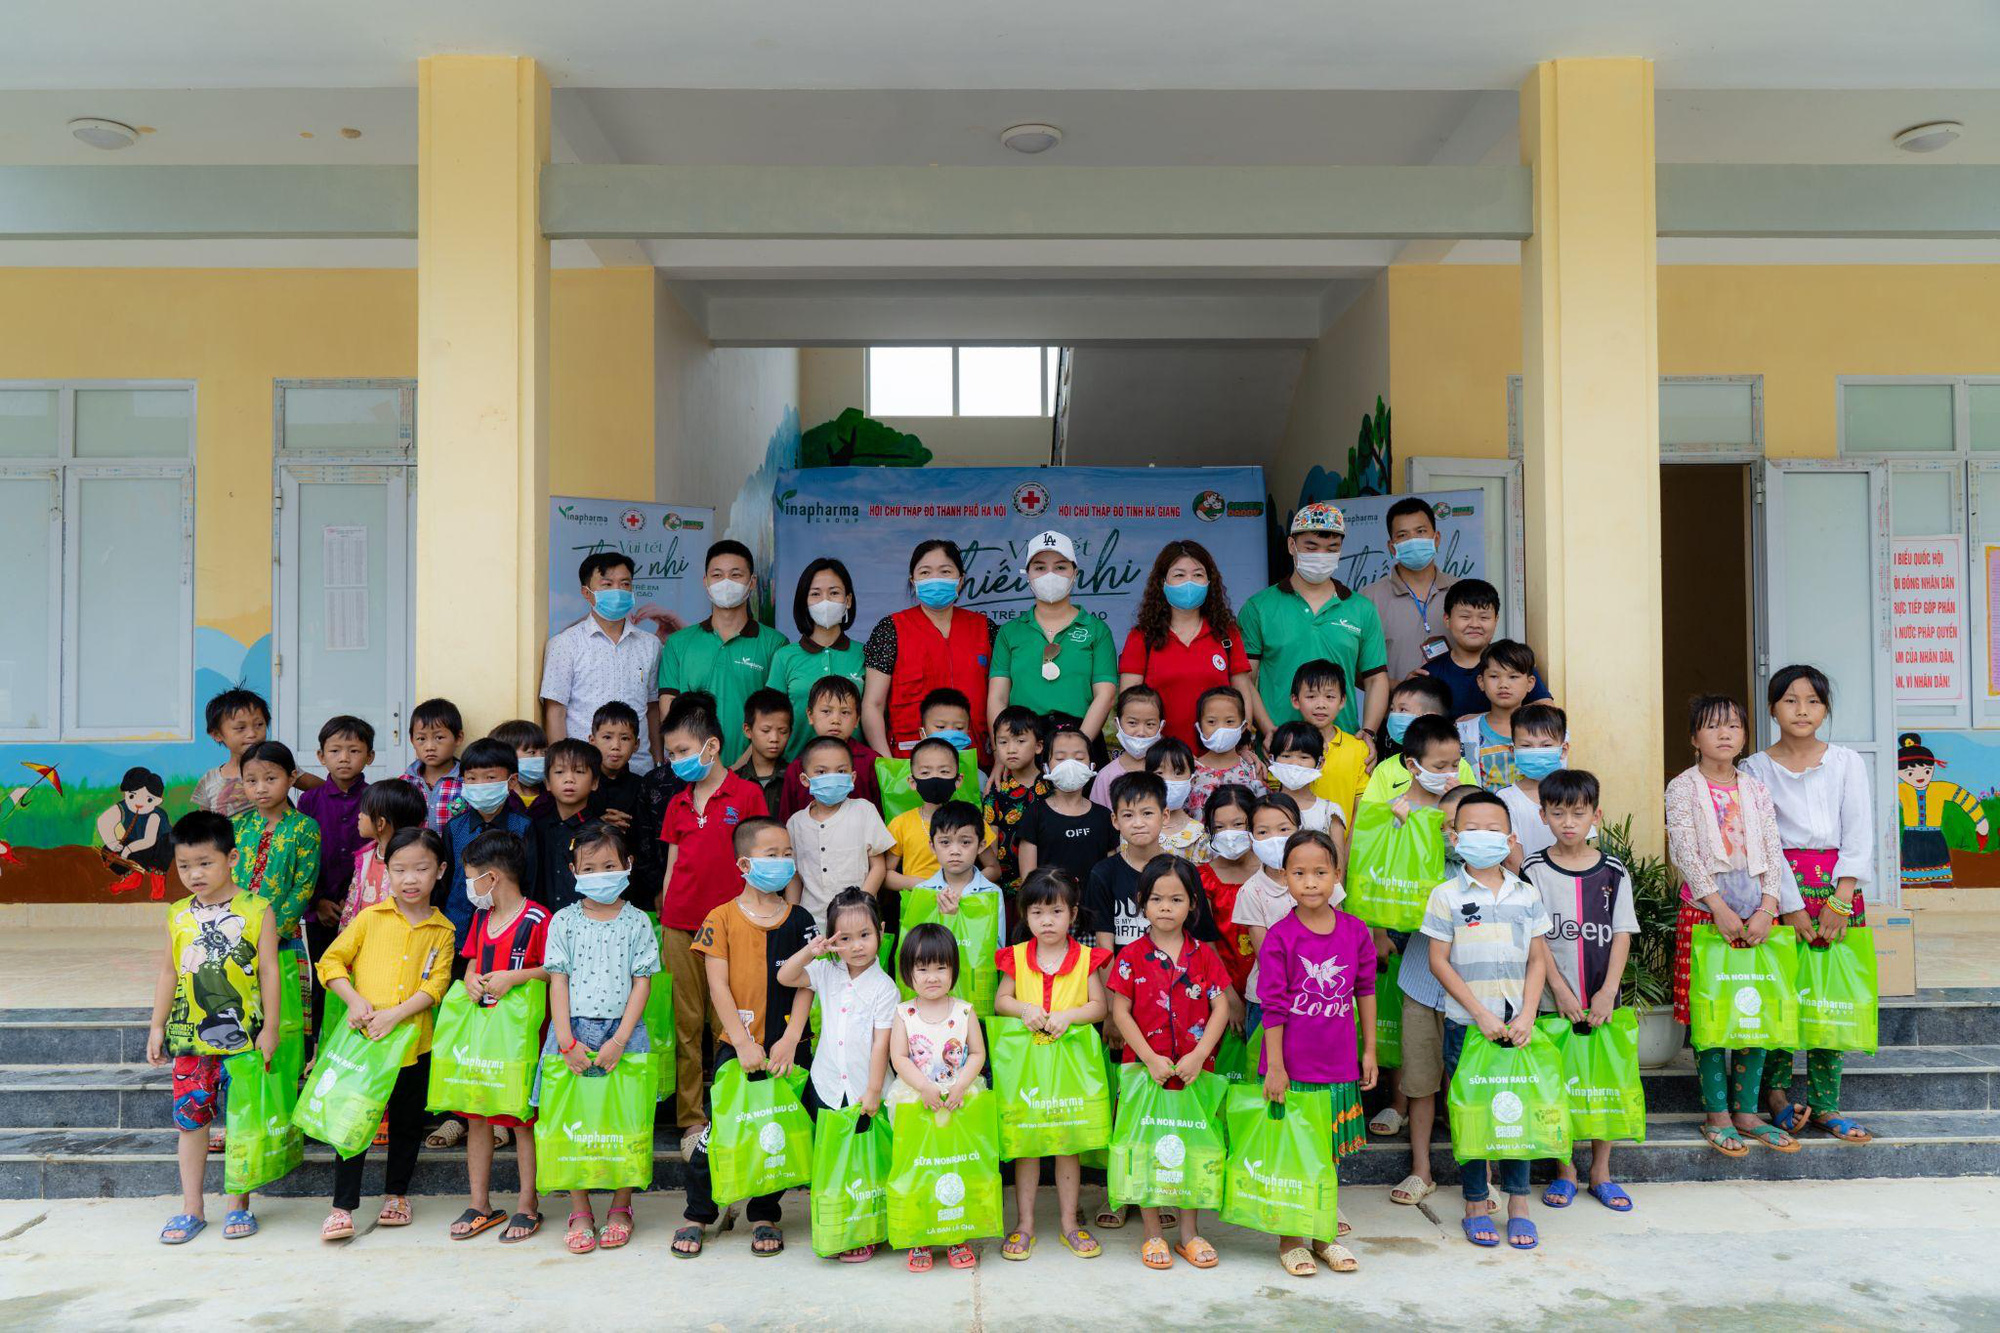 Doanh nhân Phạm Quang Trường - Nguyễn Thị Diễm Hằng mang Tết ấm đến cho hơn 4.000 trẻ em nghèo vùng cao - Ảnh 3.